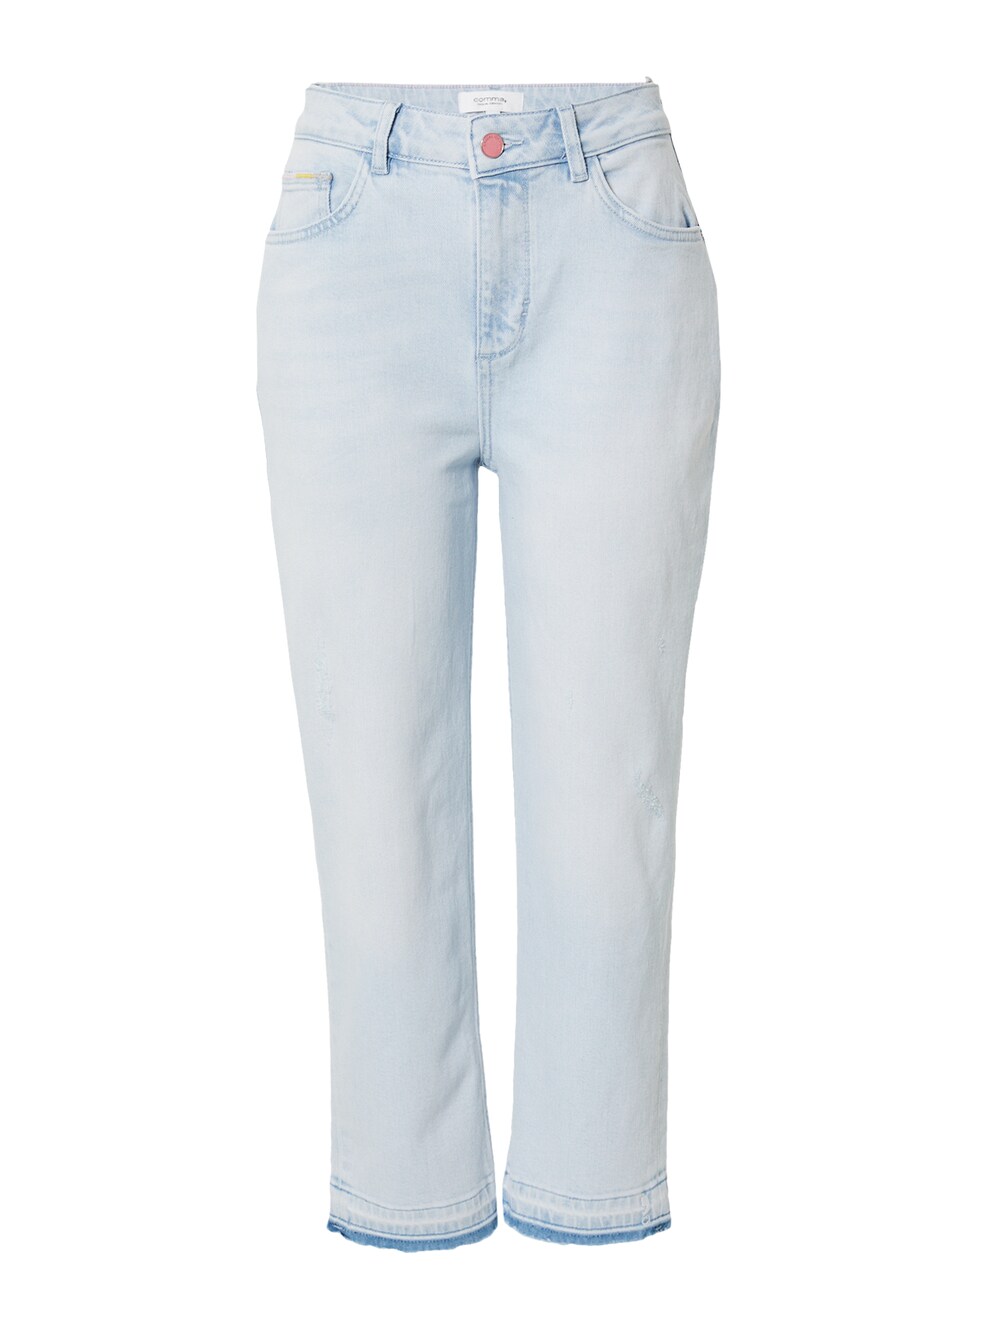 Обычные джинсы Comma Casual Identity, светло-синий